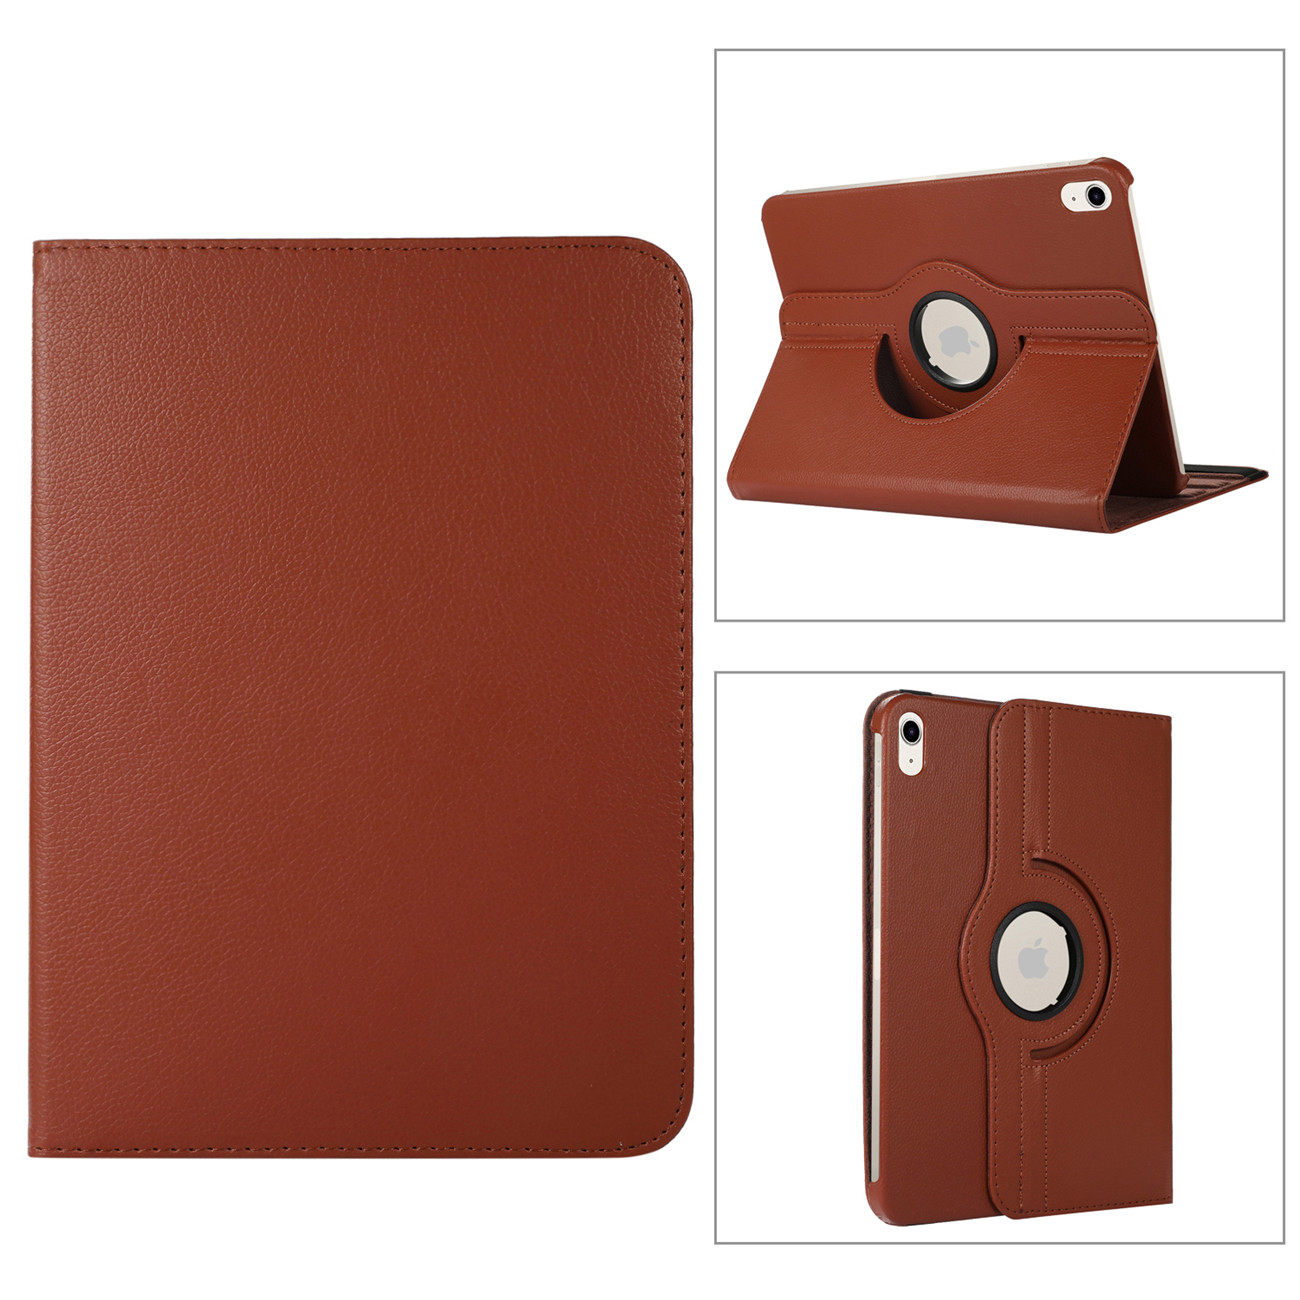 ipad 4 leather cases